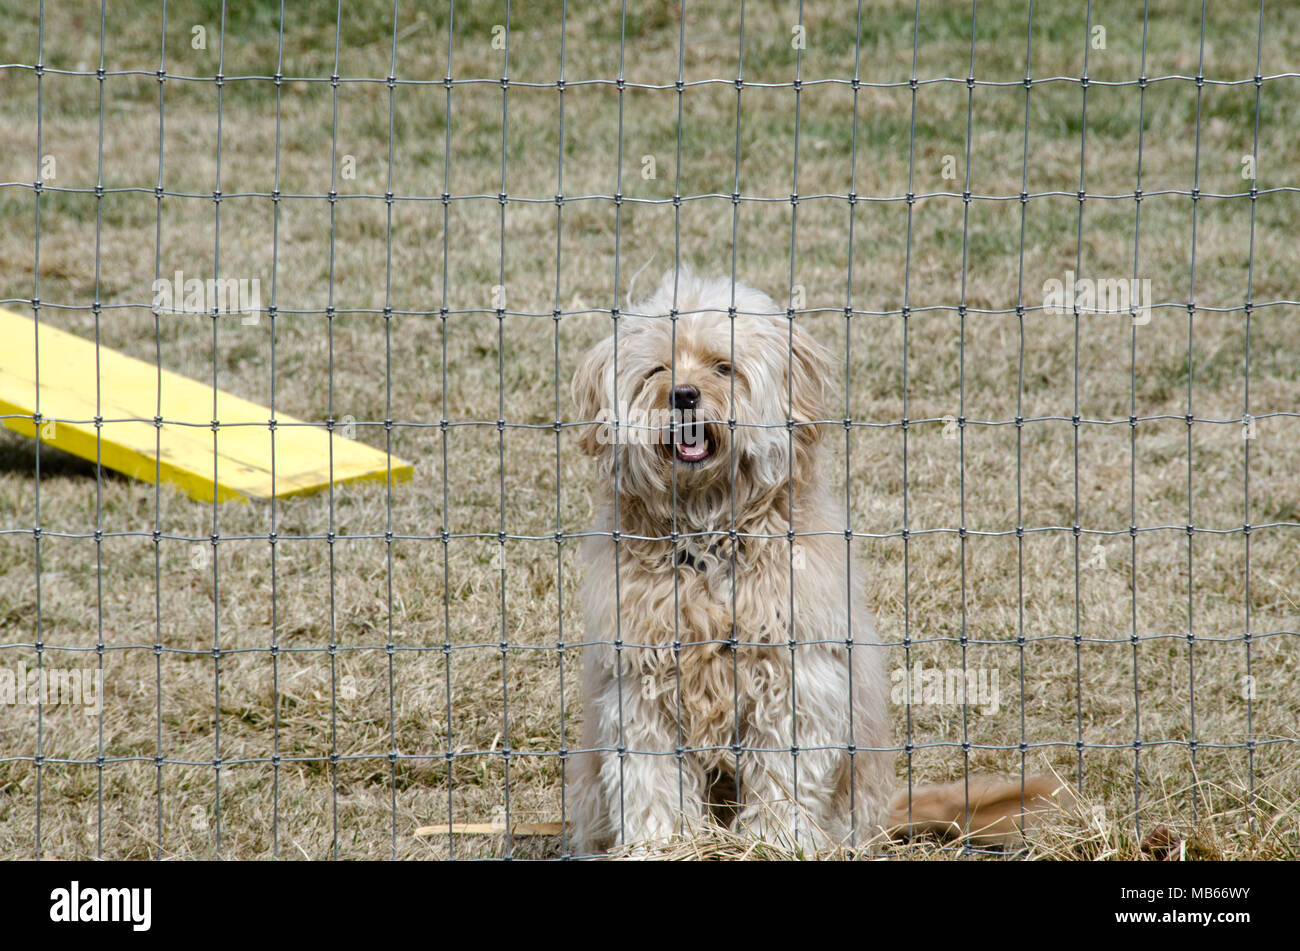 Un mignon chiot de race mixte aboie de derrière une clôture, attendant juste pour jouer ! Banque D'Images